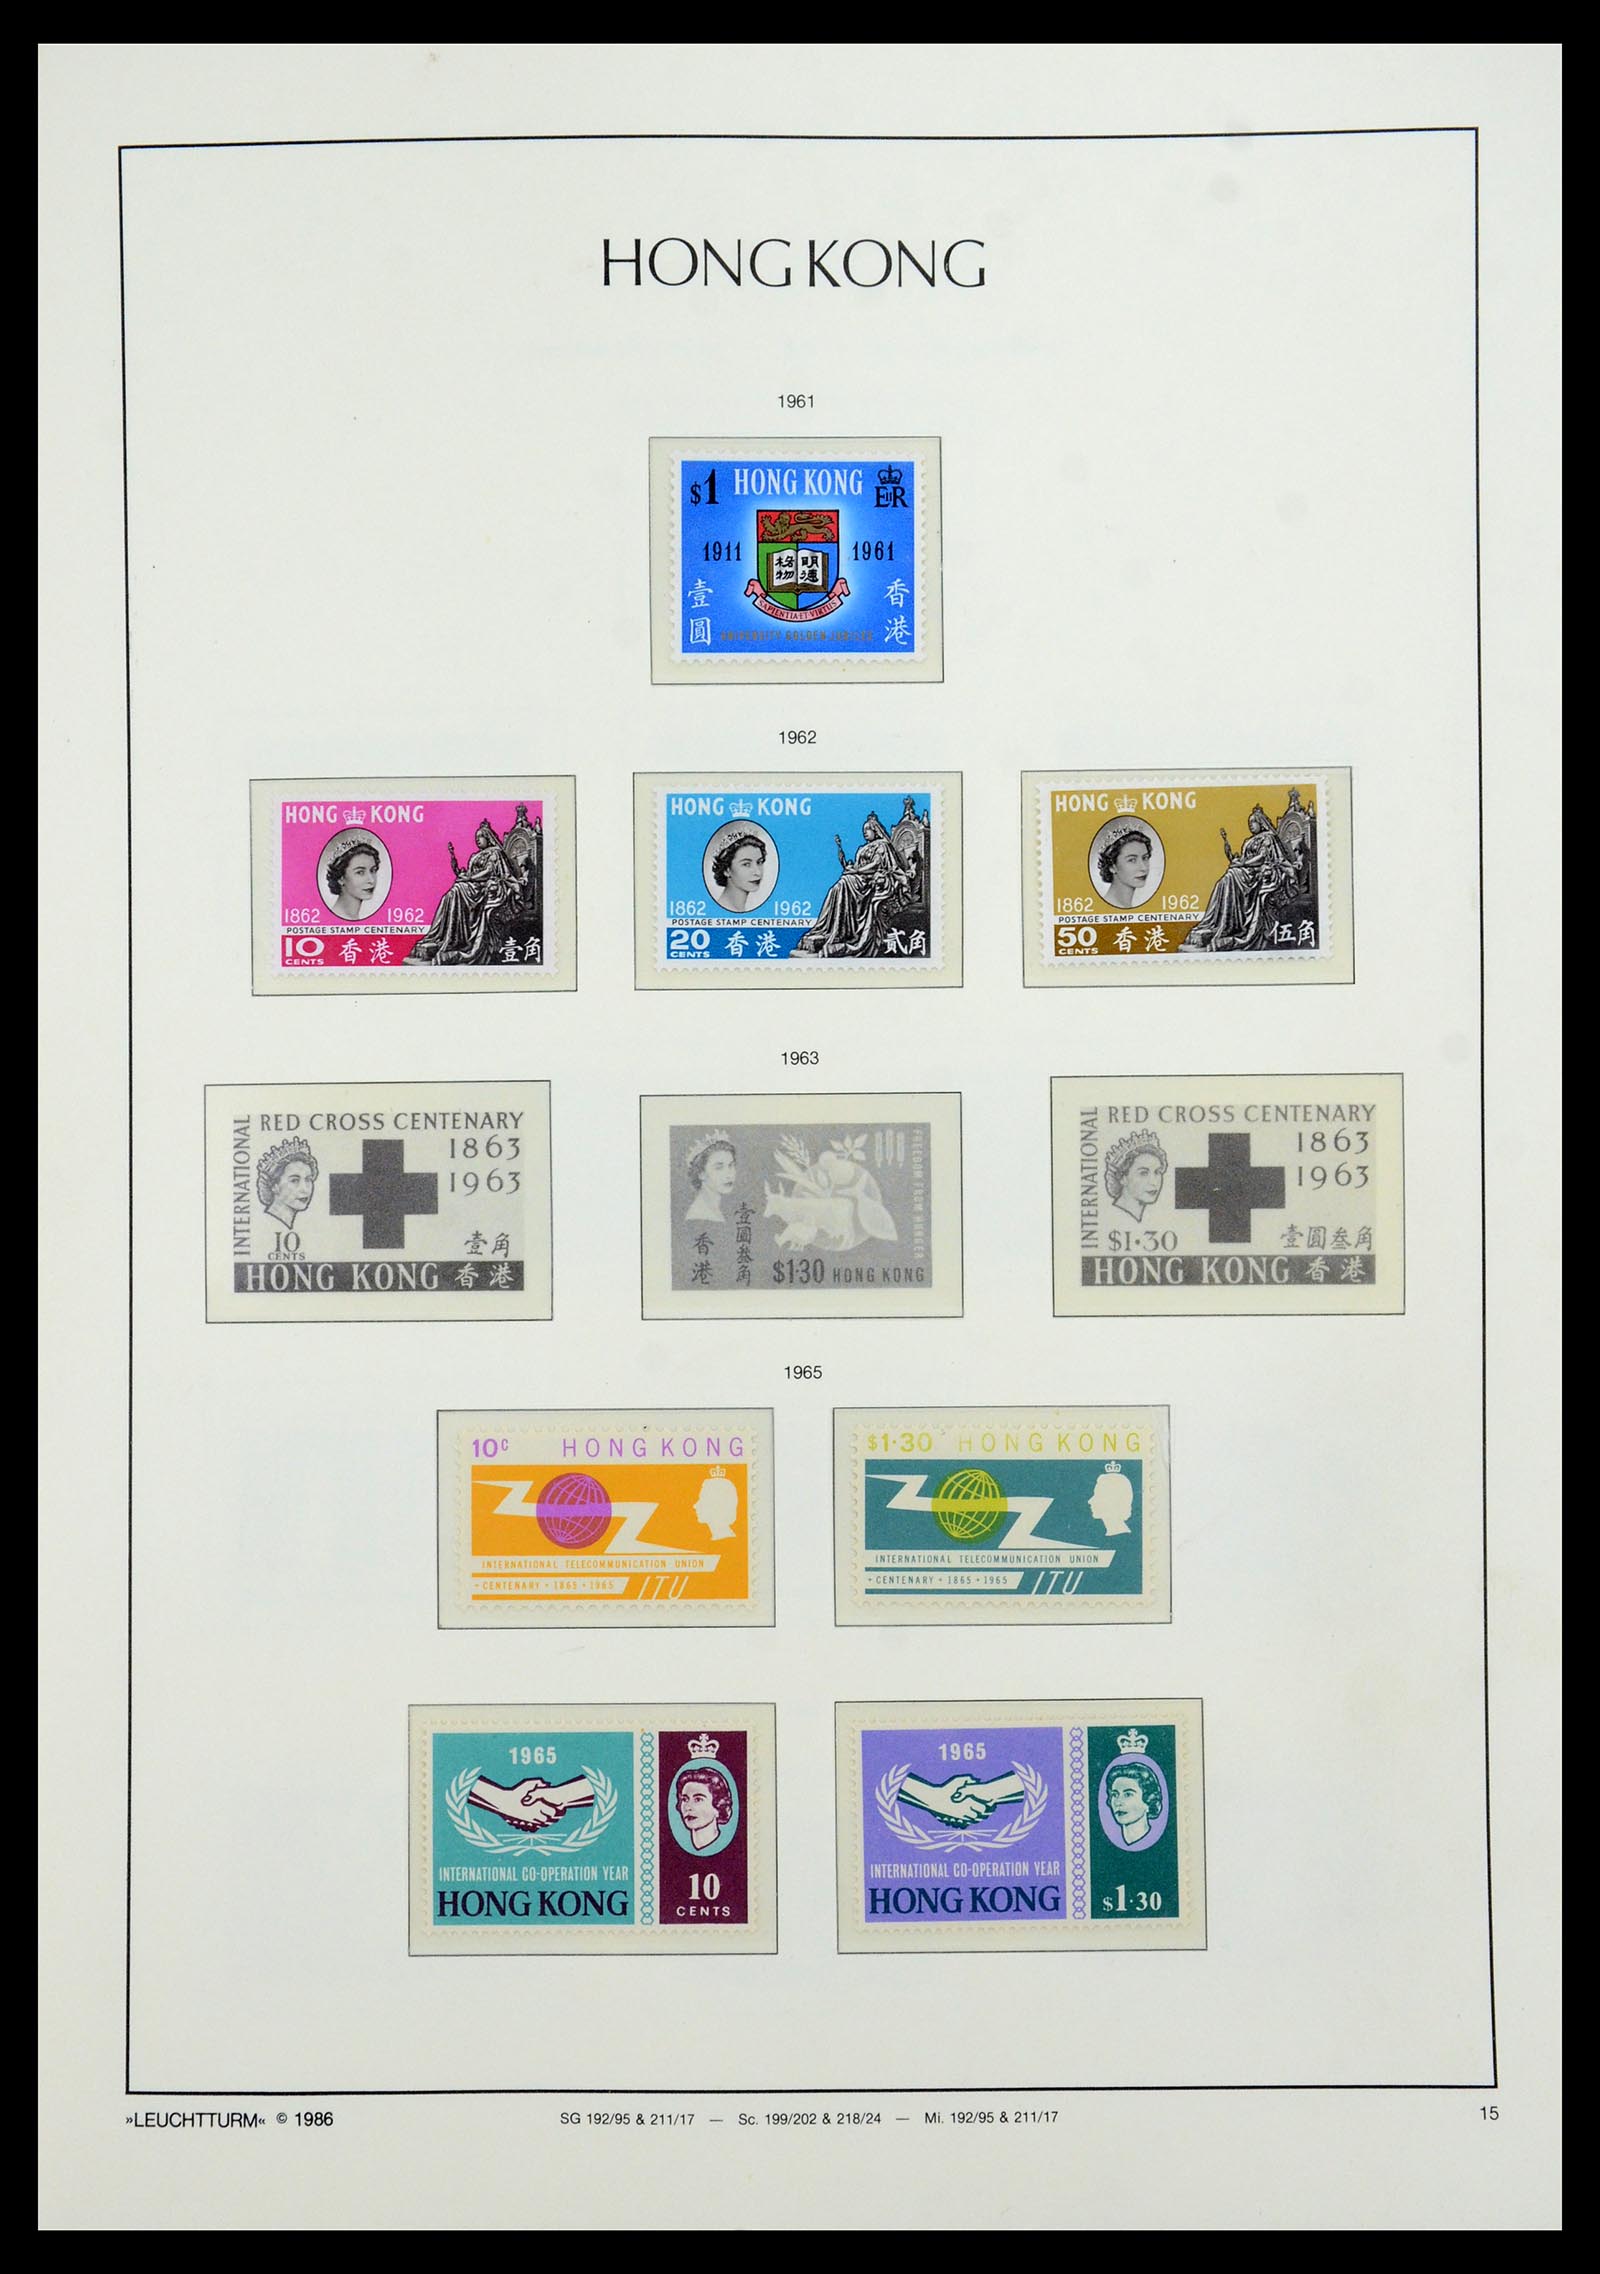 35997 003 - Stamp collection 35997 Hong Kong 1949-1996.